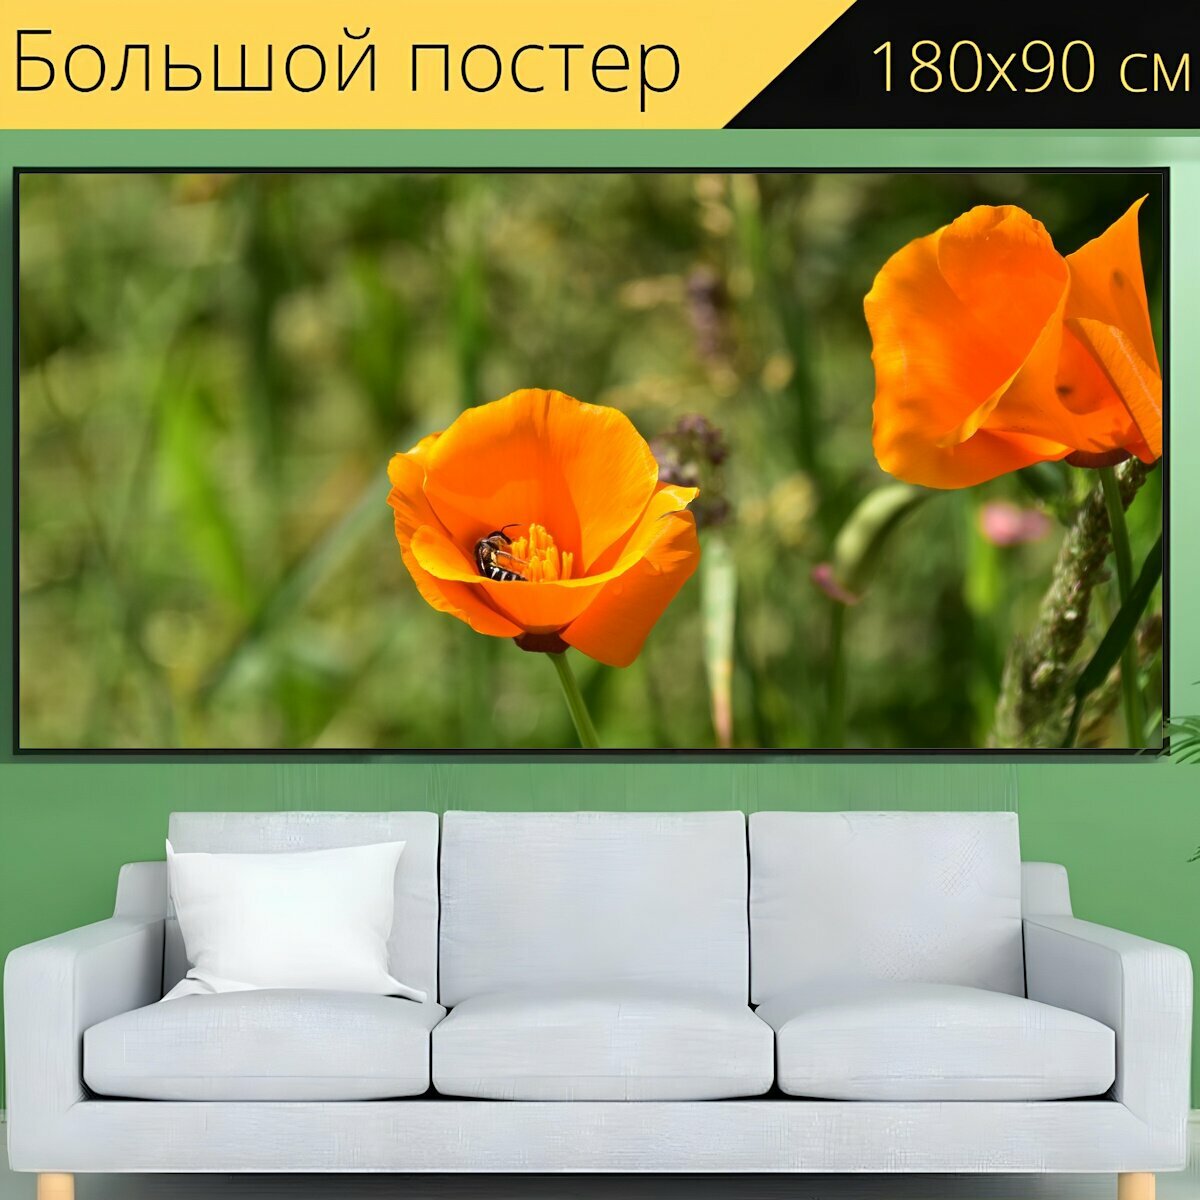 Большой постер "Цветок апельсина, зеленый стебель, зеленые листья" 180 x 90 см. для интерьера